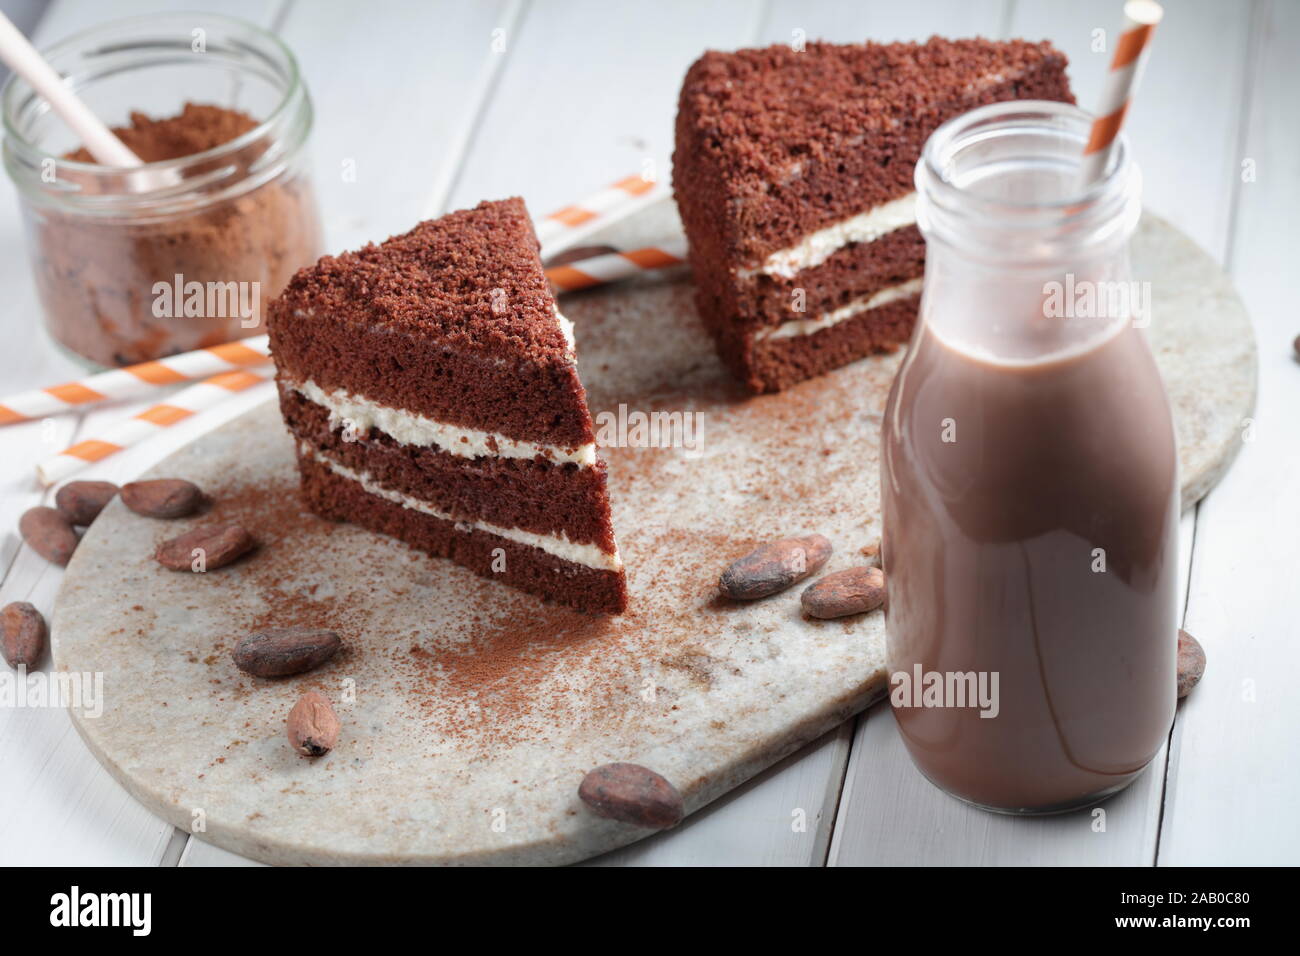 Due fette di torta al cioccolato, cioccolato caldo in una bottiglia, cacao in polvere e le fave di cacao su un tavolo rustico Foto Stock